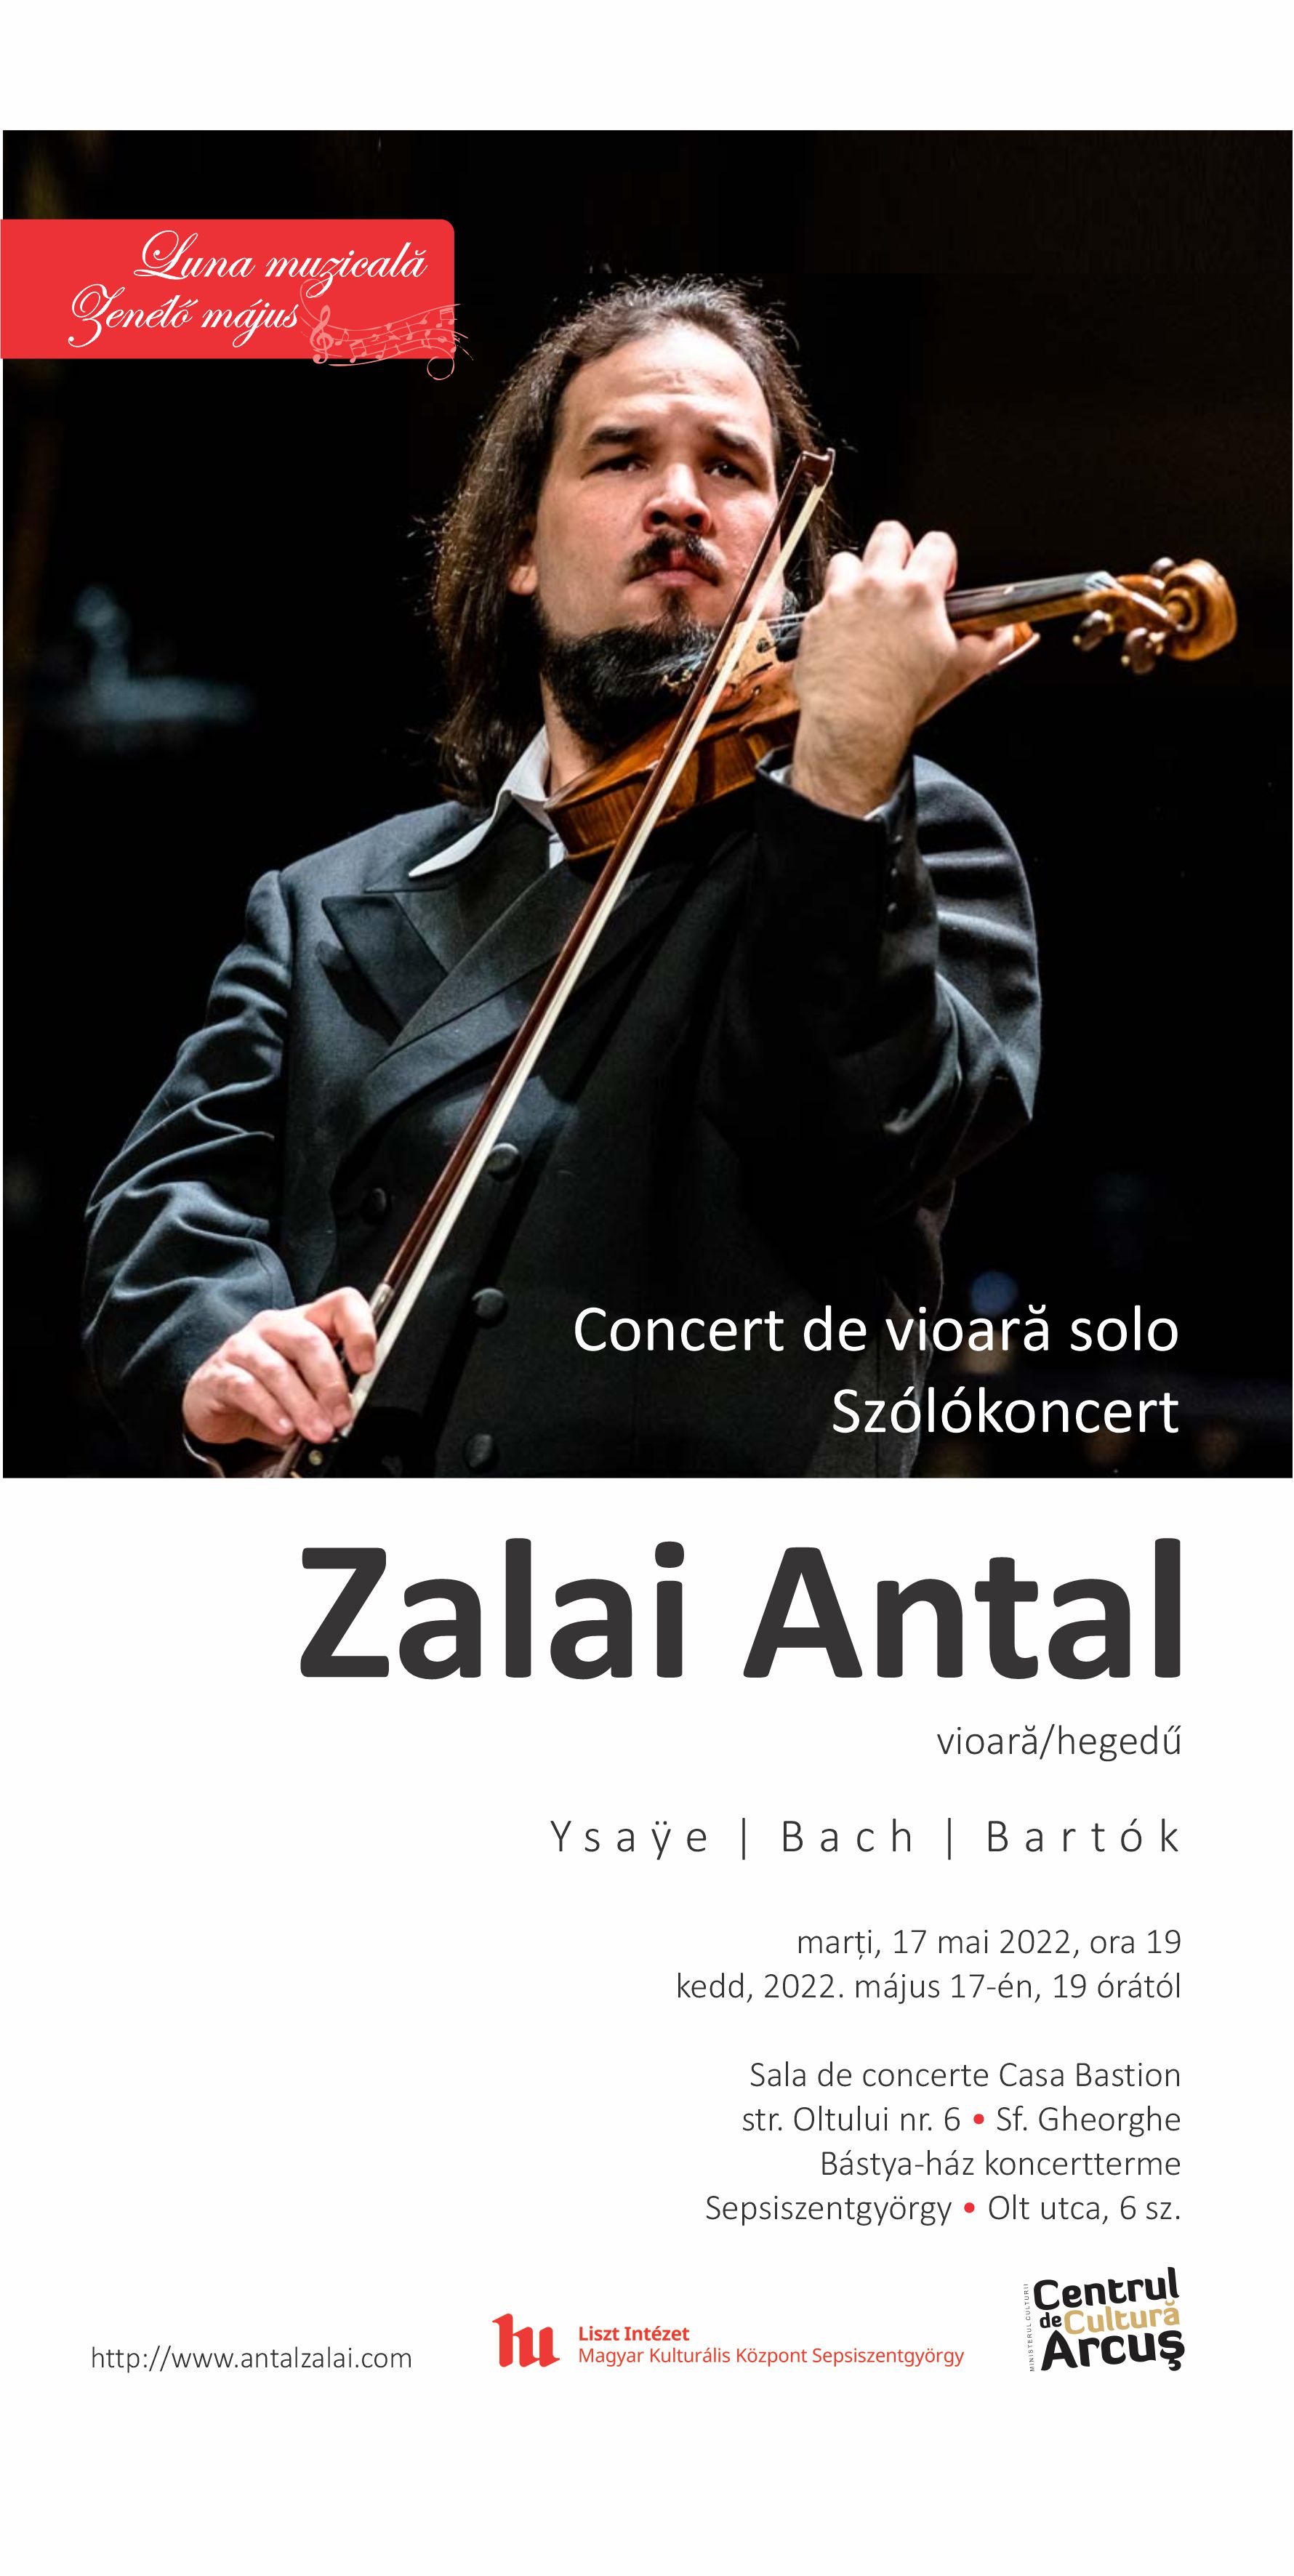 Violin concert - Zalai Antal